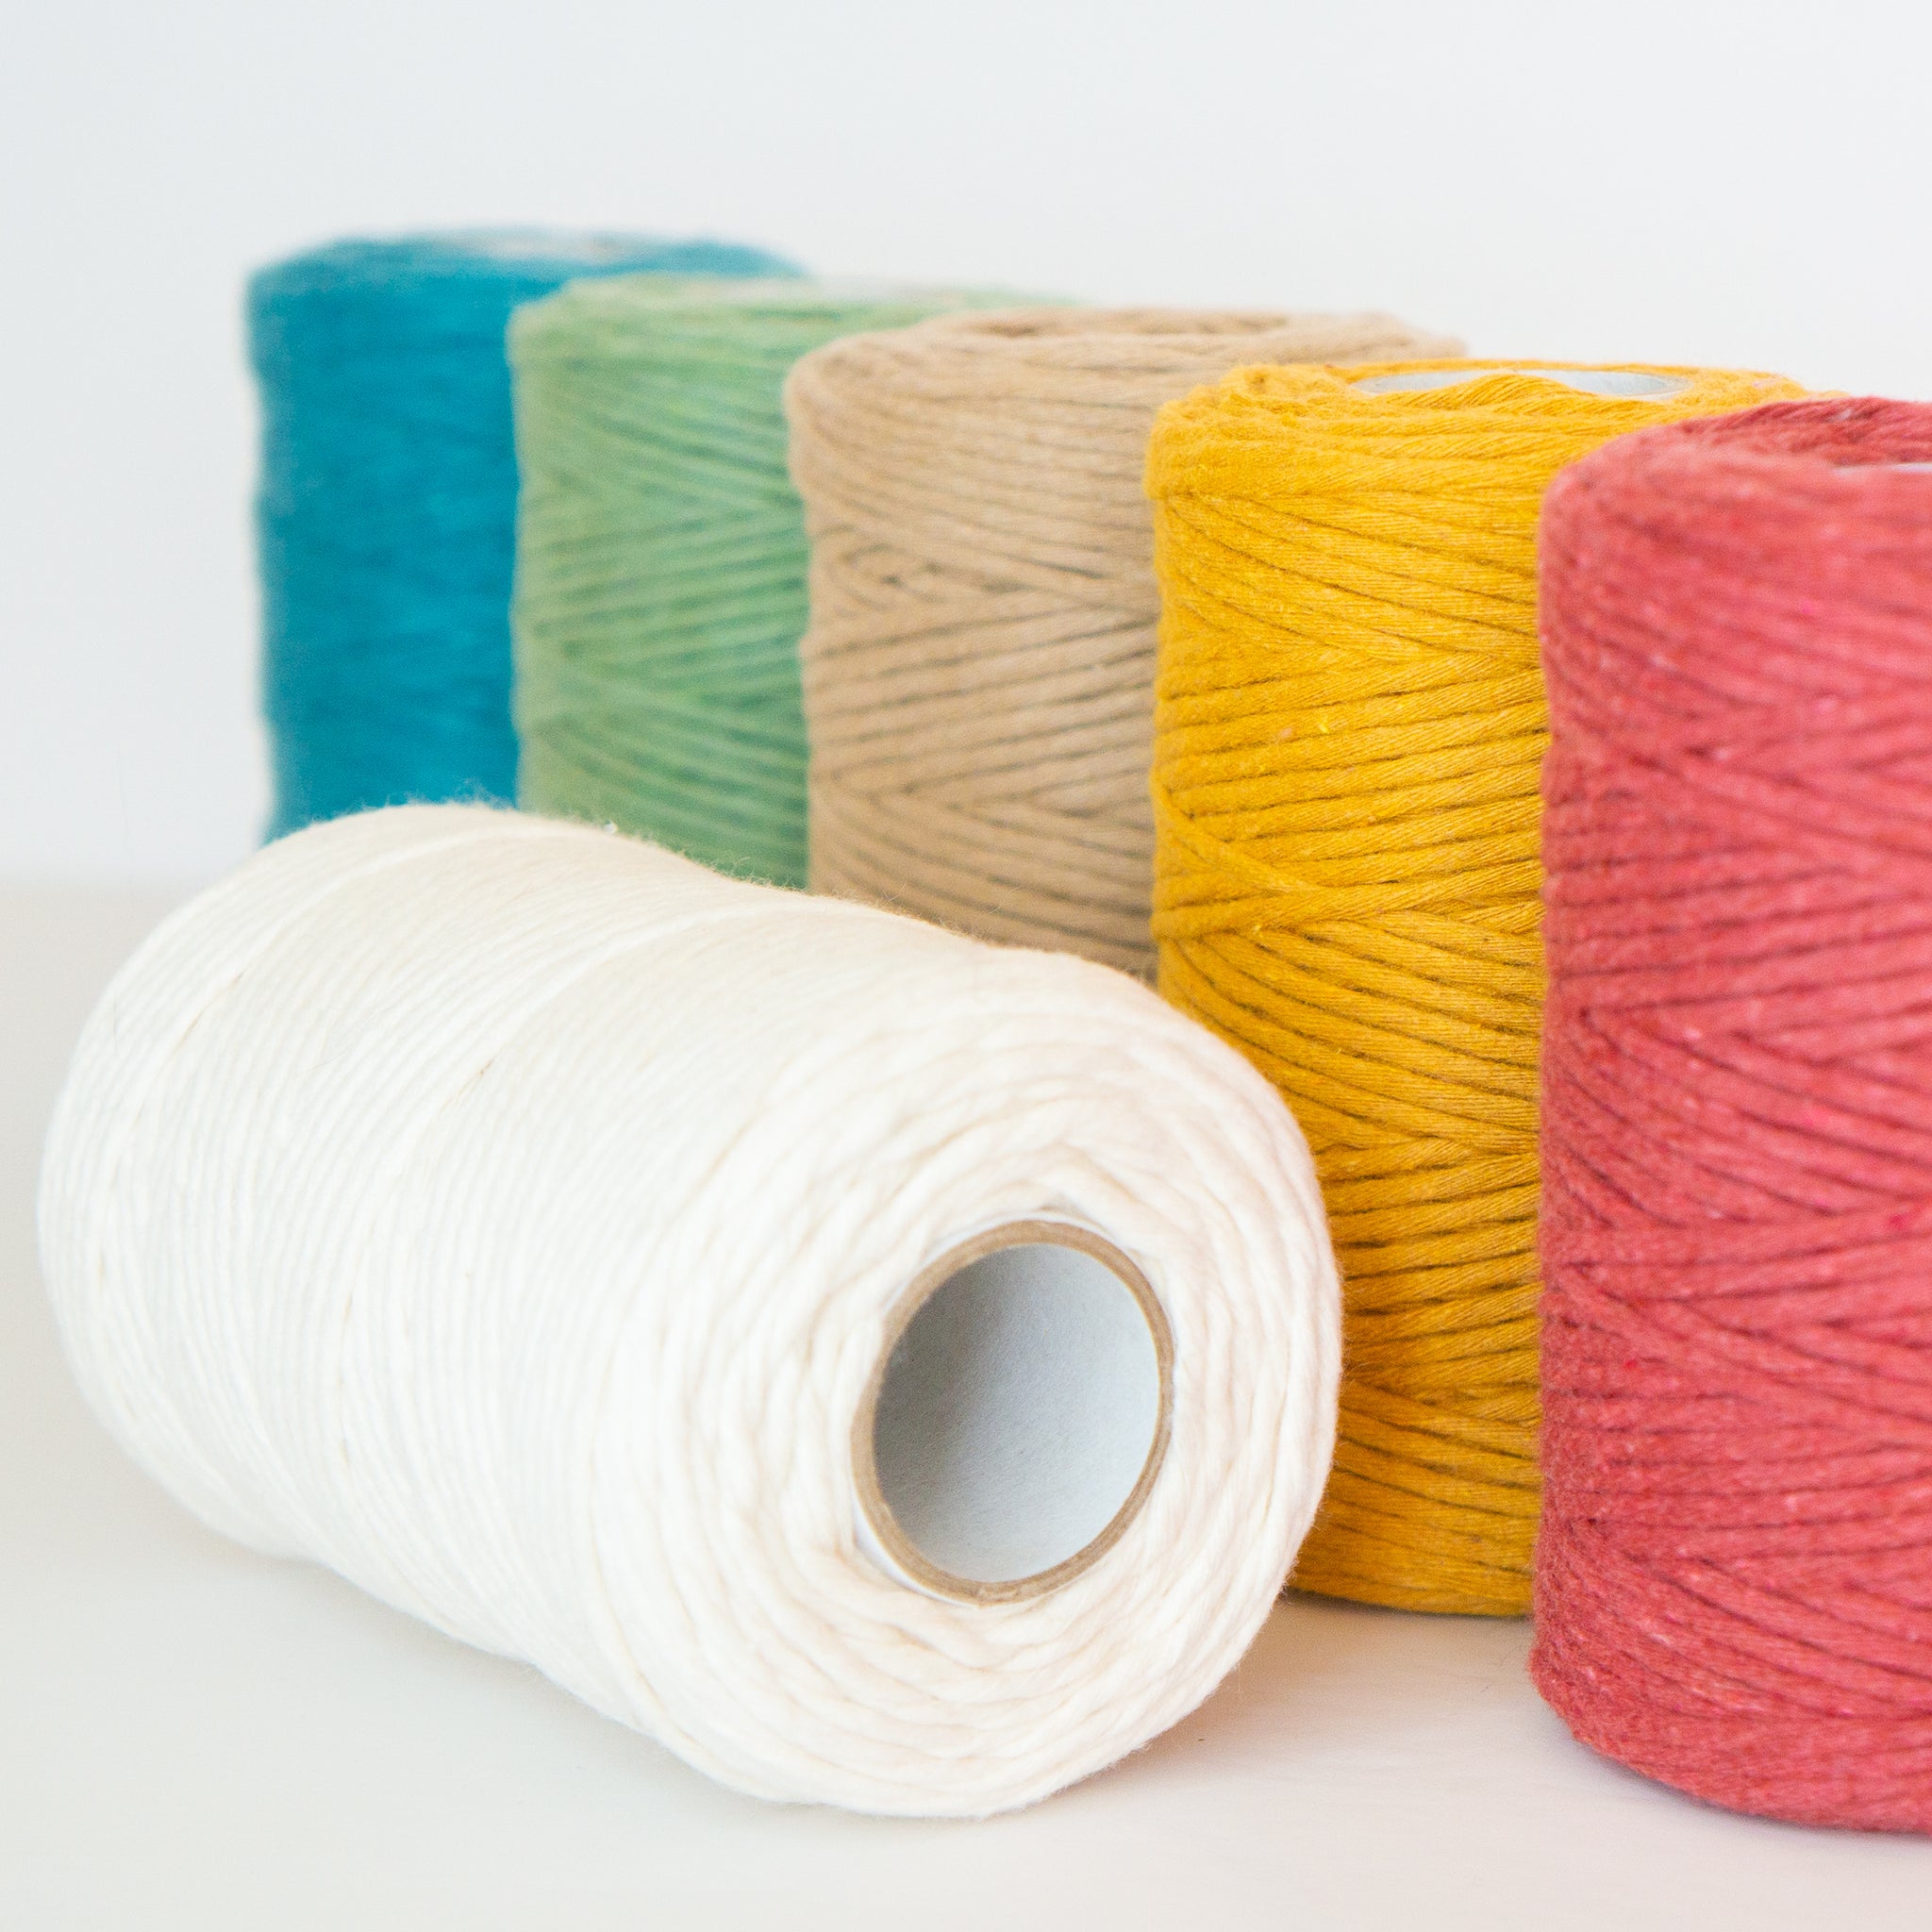 Soft Cotton Cords - Zero Waste - Single Strand 4 mm